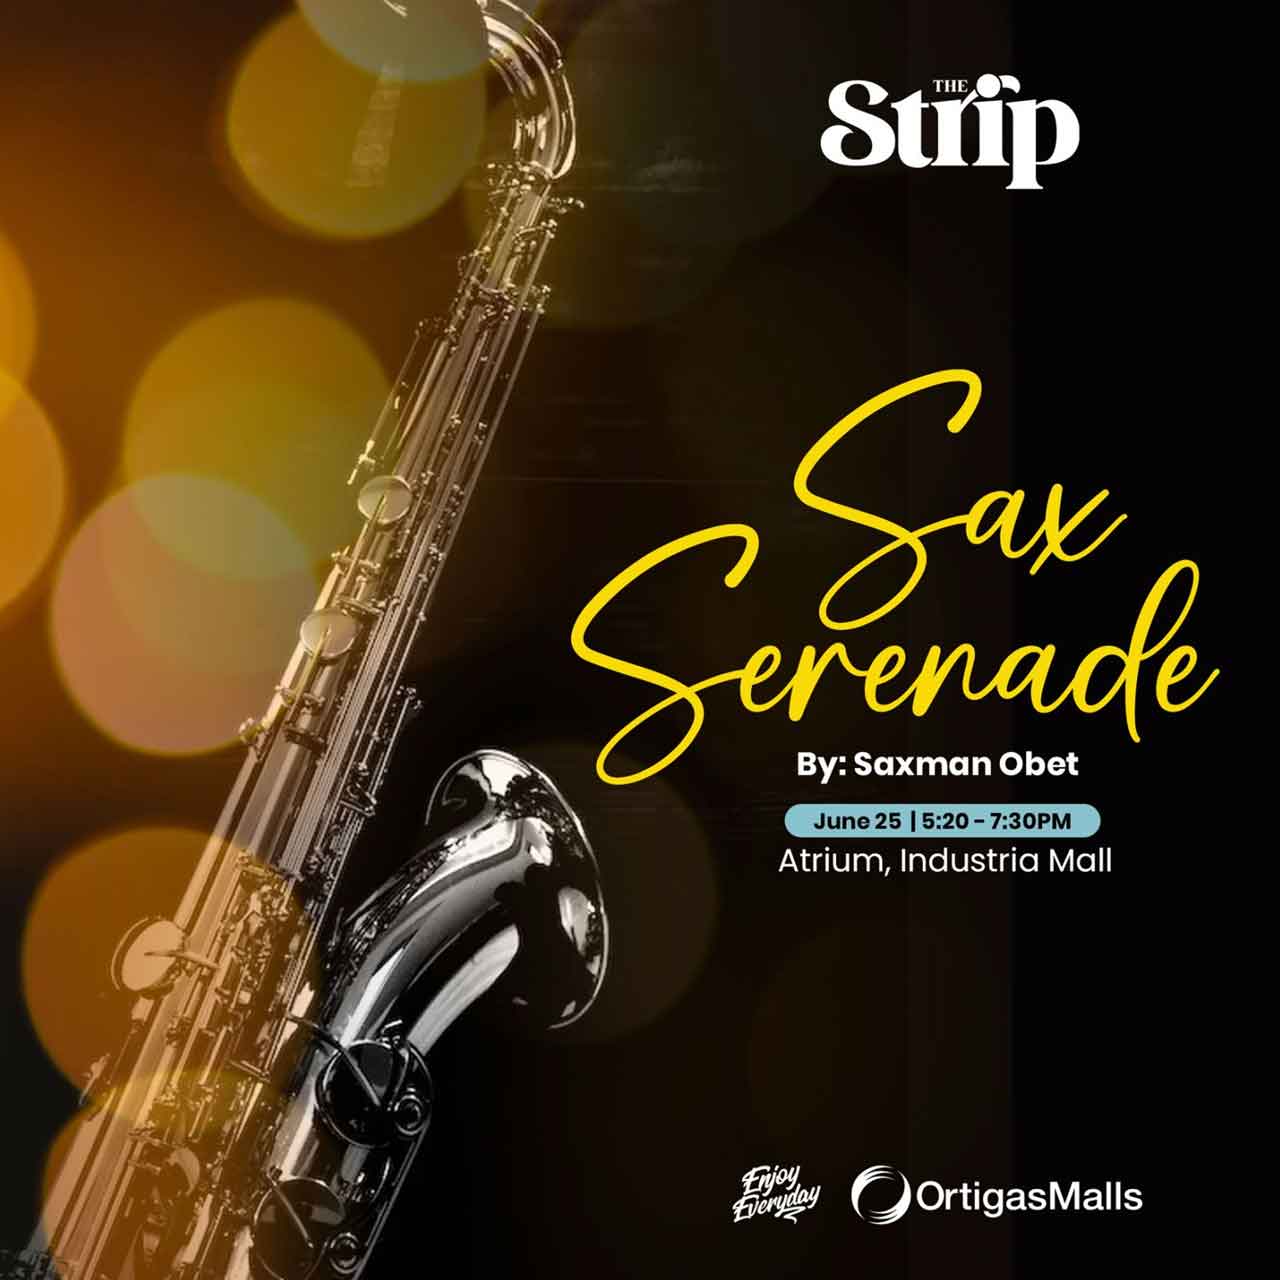 Sax Serenade